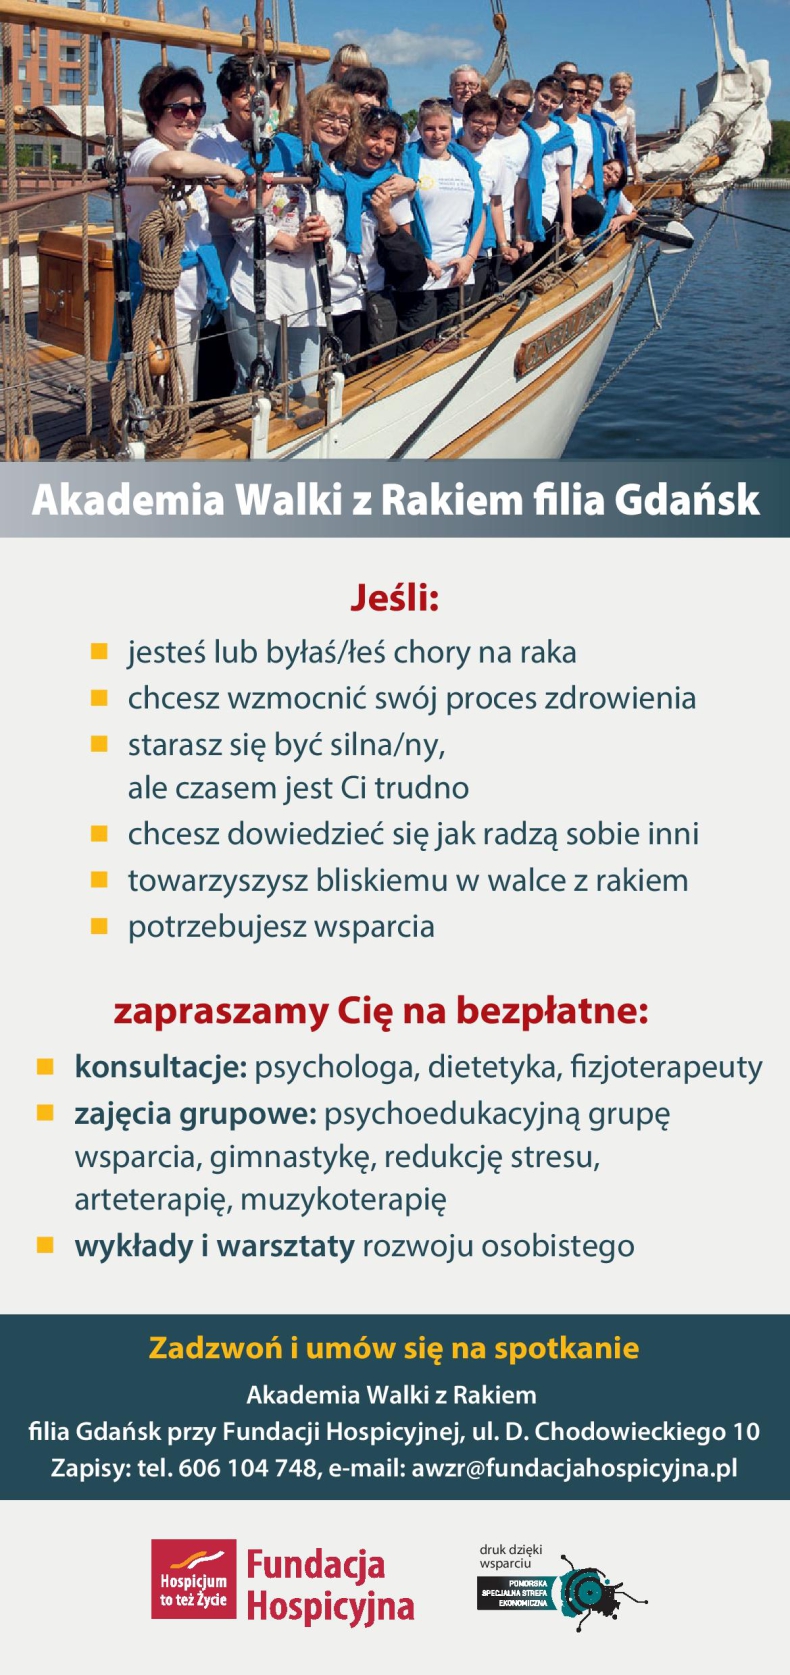 Łapią wiatr w żagle! – rejs osób dotkniętych chorobą nowotworową - GospodarkaMorska.pl